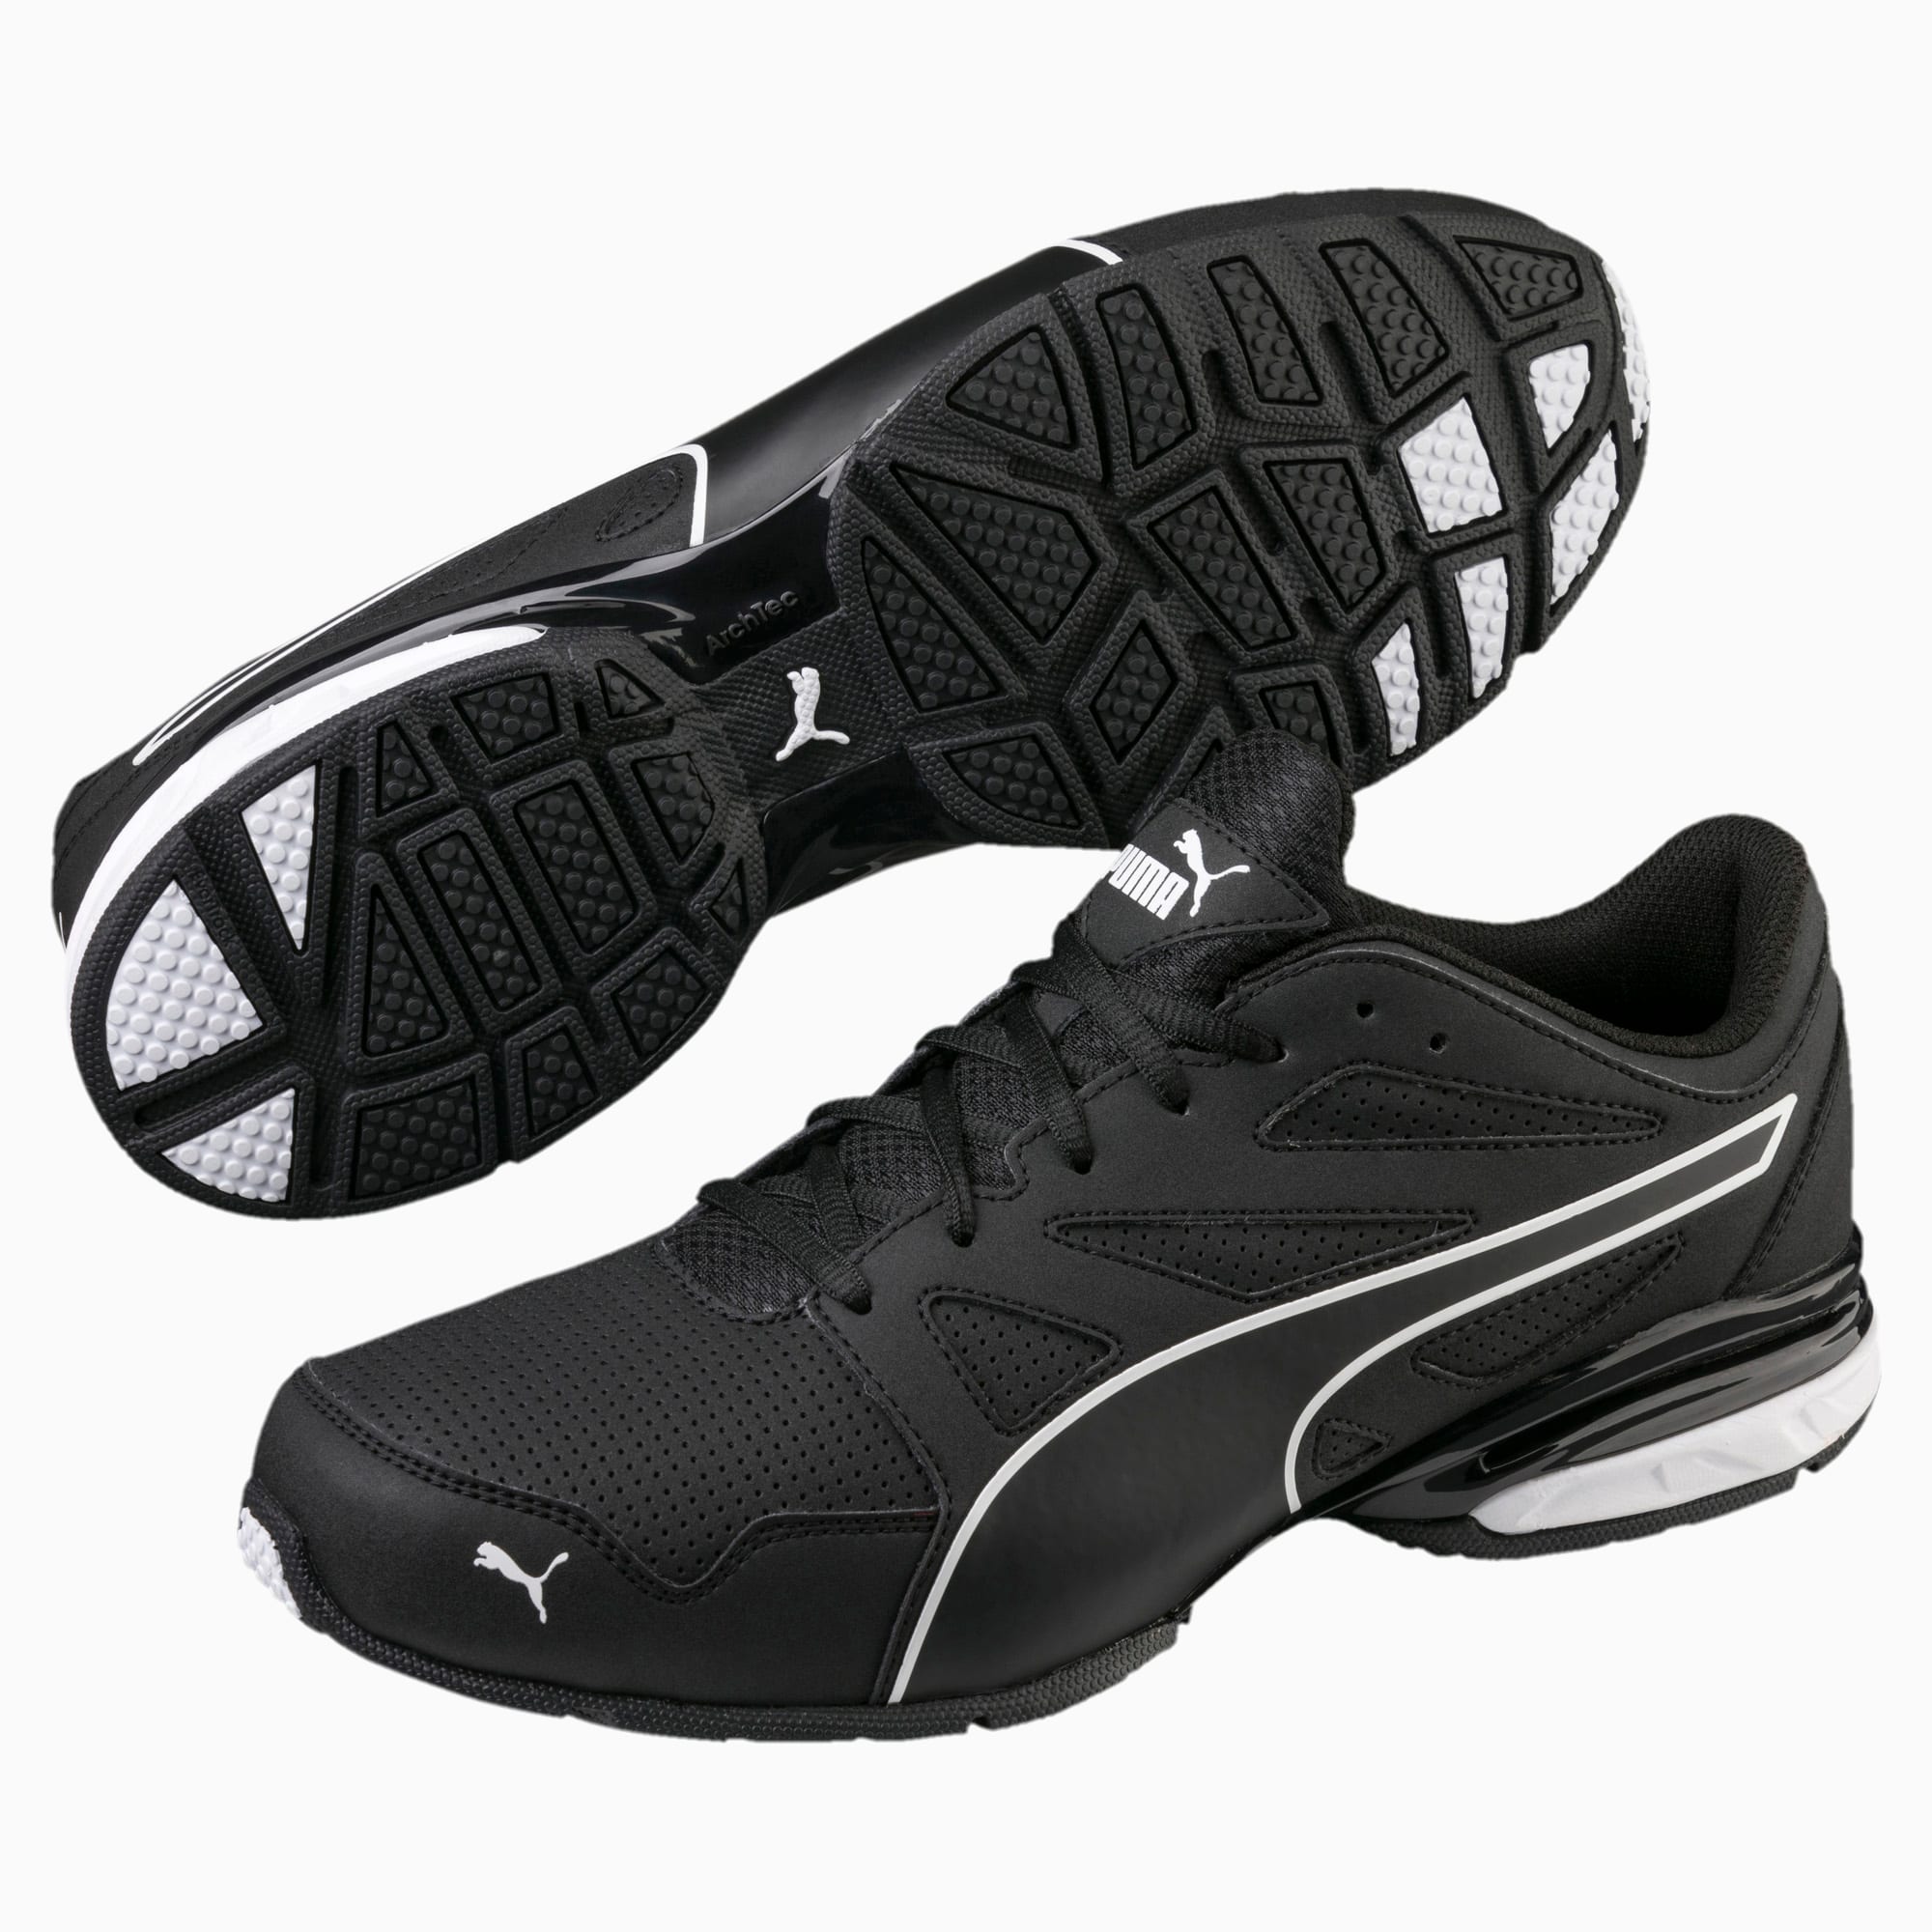 Zapatos deportivos Tazon Modern SL FM para hombre | PUMA EE. UU.